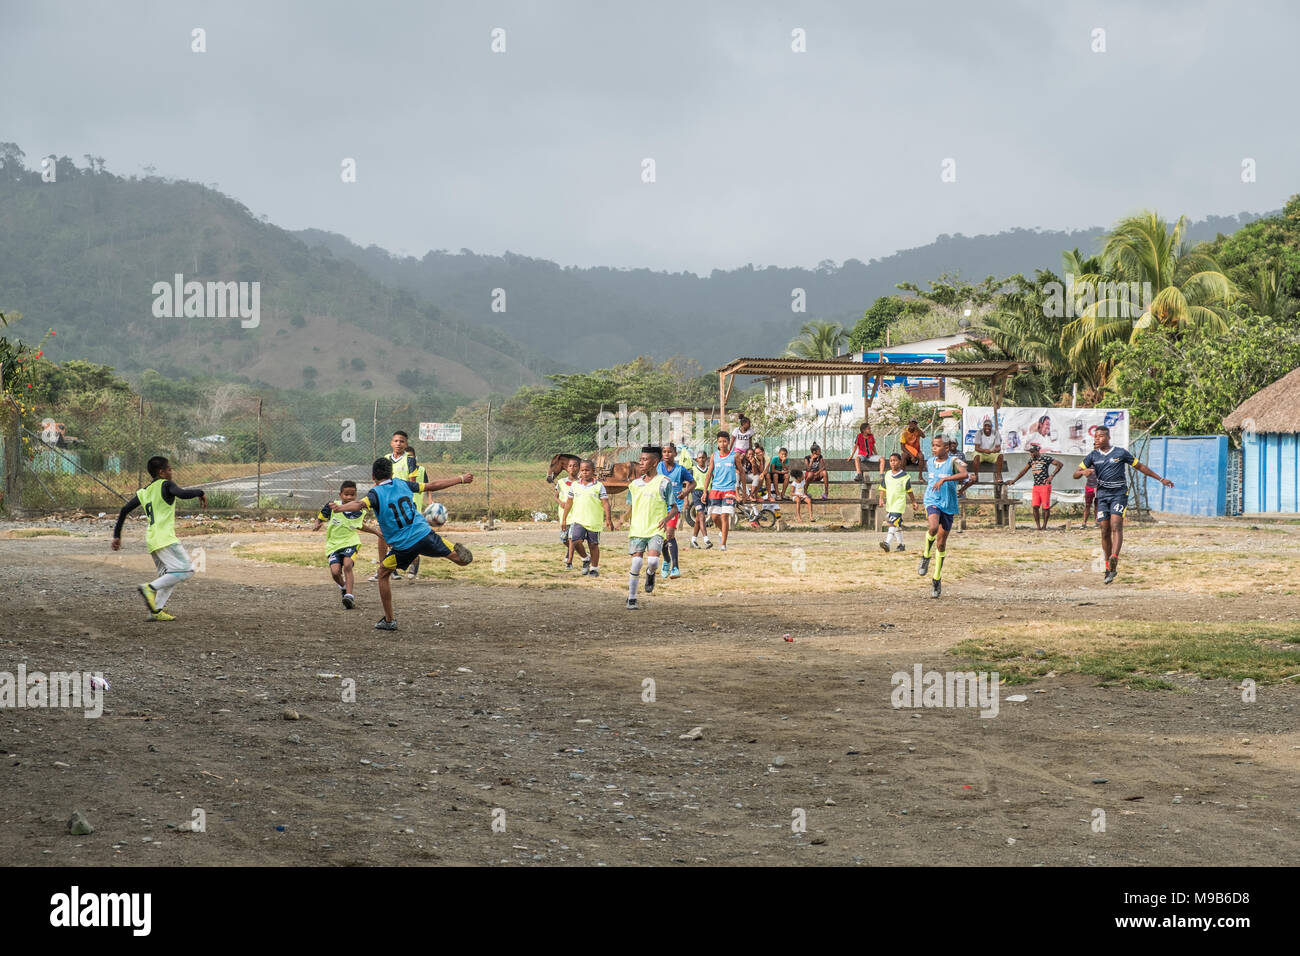 Bambini Che Giocano A Calcio In Strada Immagini e Fotos Stock - Alamy